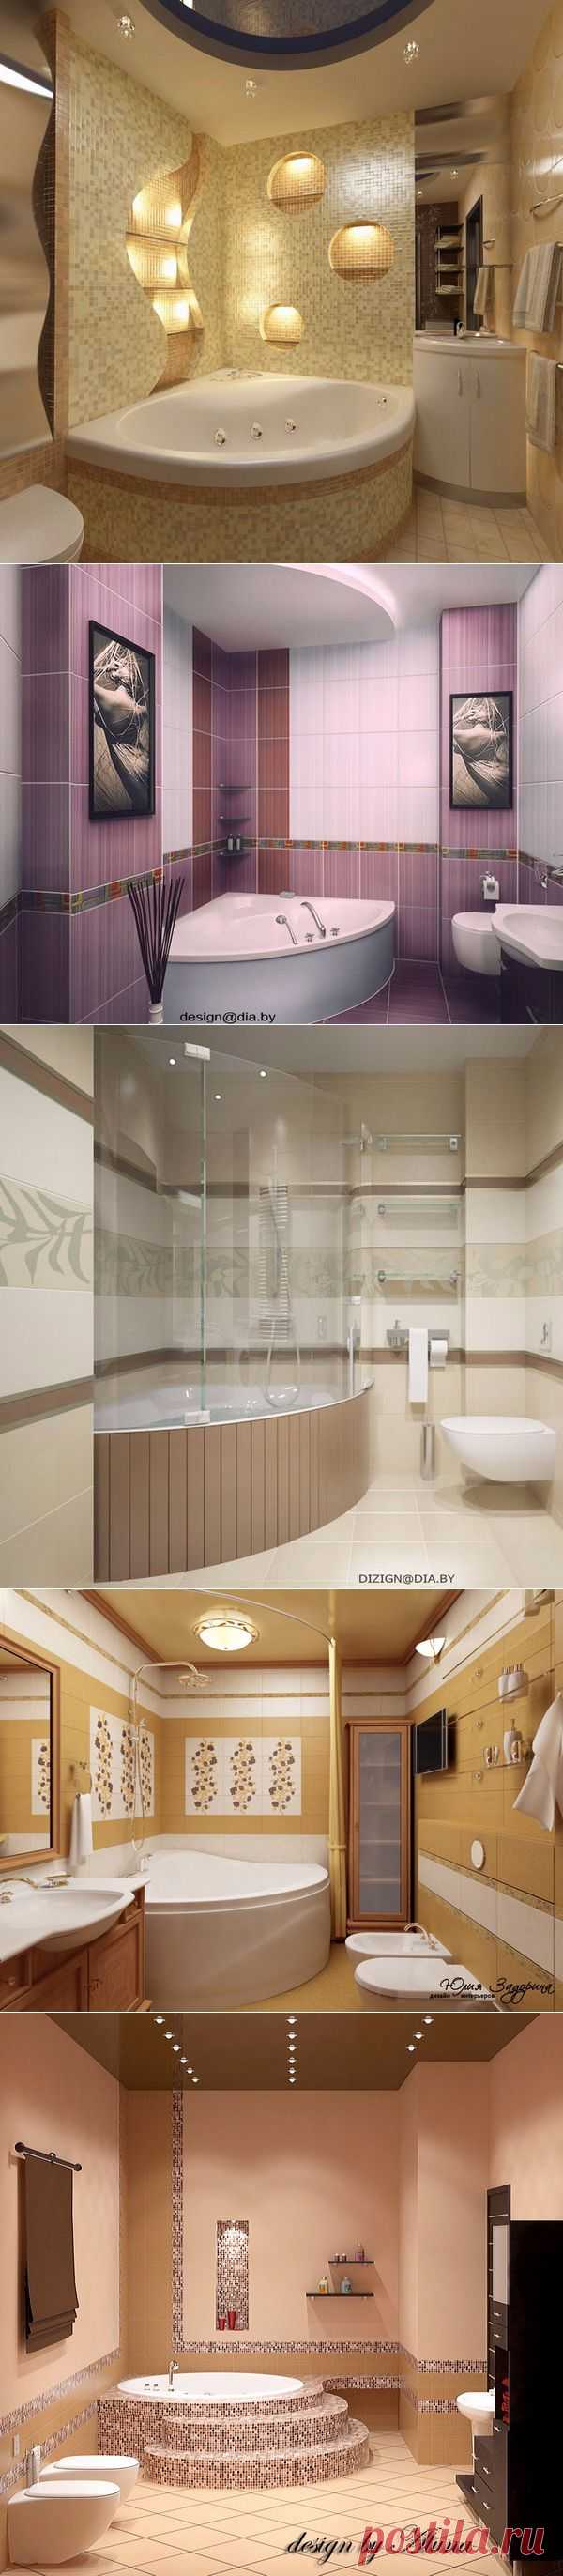 Роскошные дизайнерские проекты ванной комнаты